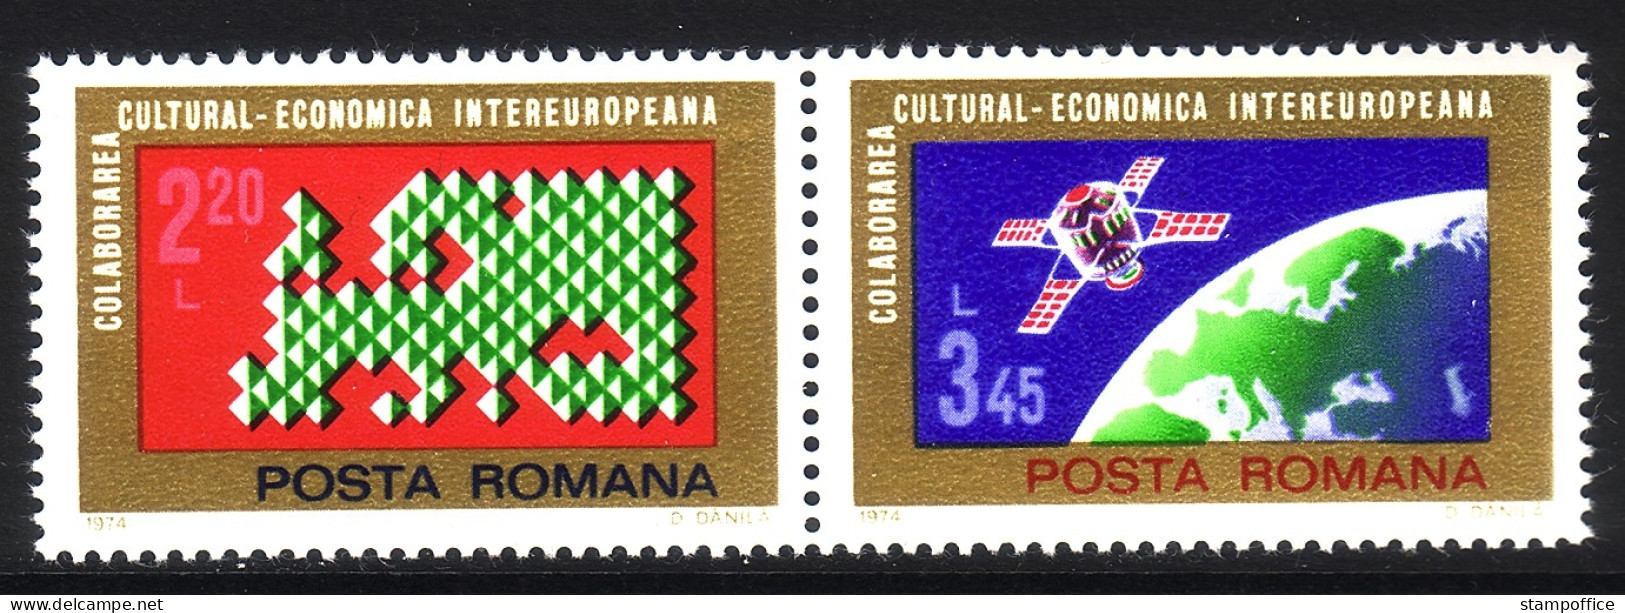 RUMÄNIEN MI-NR. 3189-3190 POSTFRISCH(MINT) EUROPA MITLÄUFER 1974 - INTEREUROPA - Nuevos